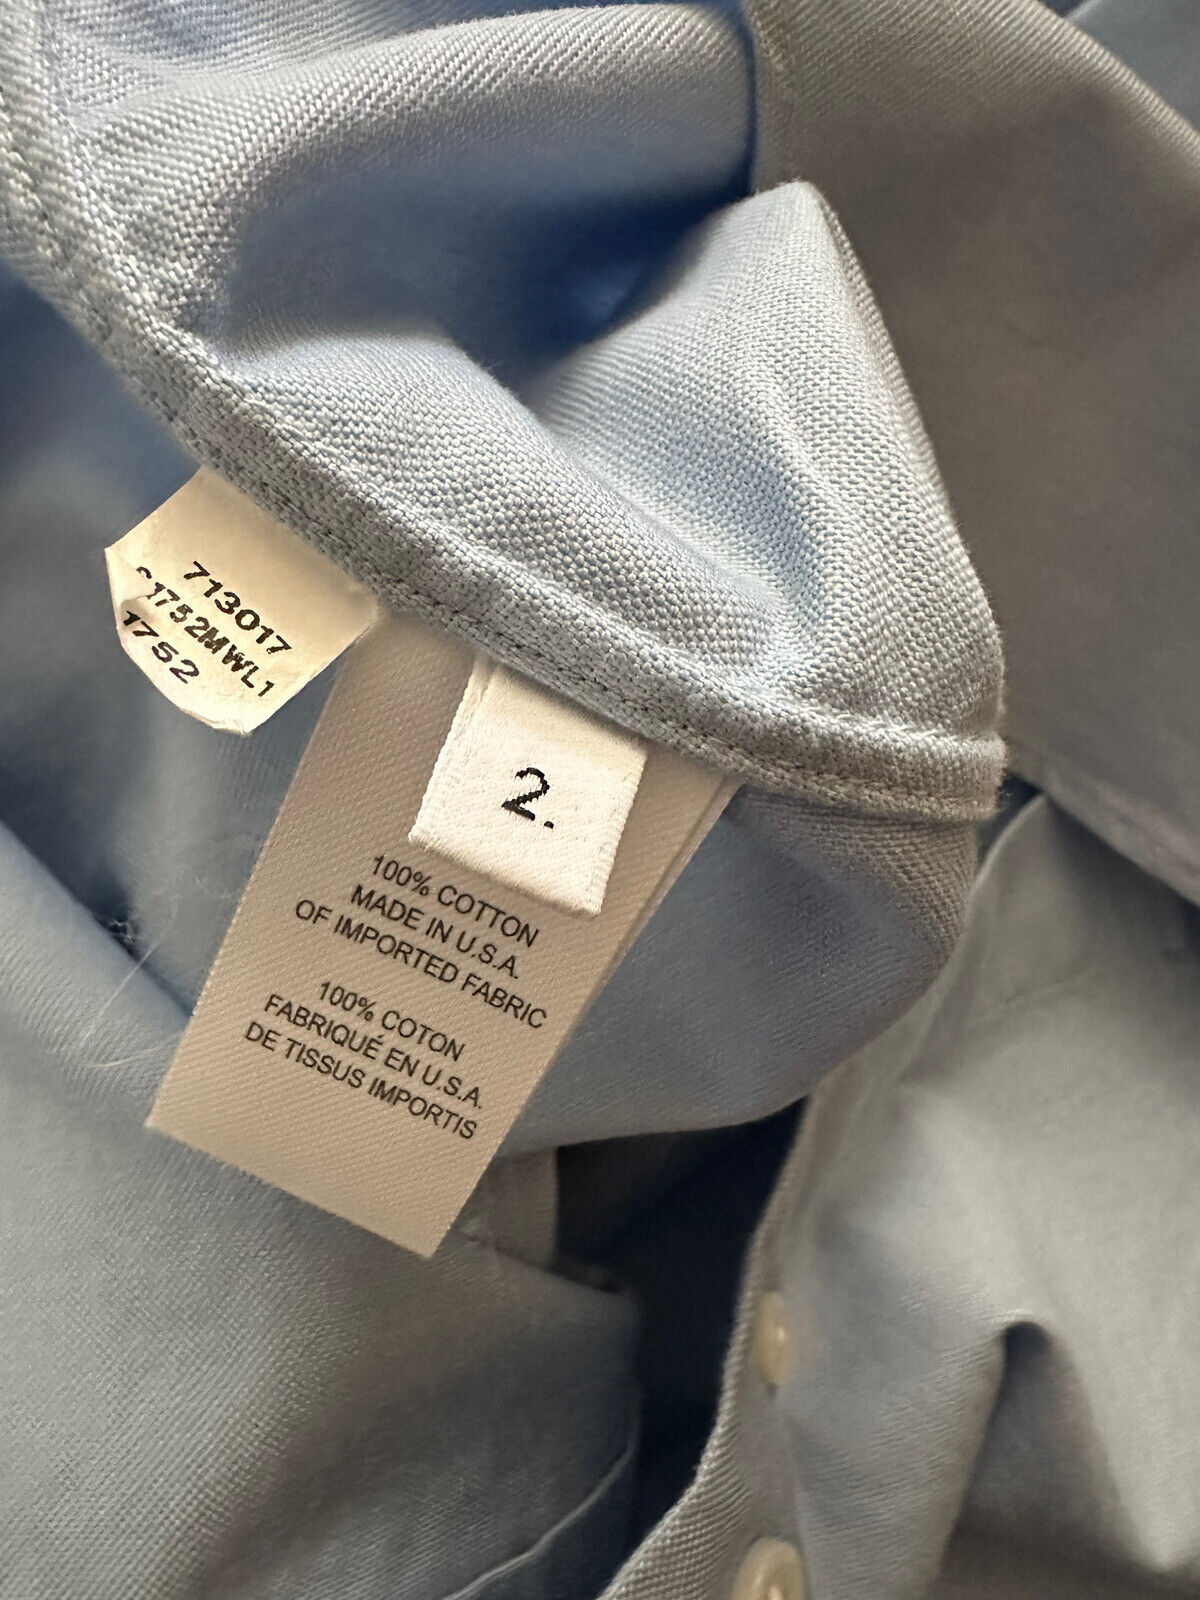 Neu mit Etikett: Thom Browne Herren-Langarmhemd mit 4-Stab-Streifen, Blau, Größe 2 (M)